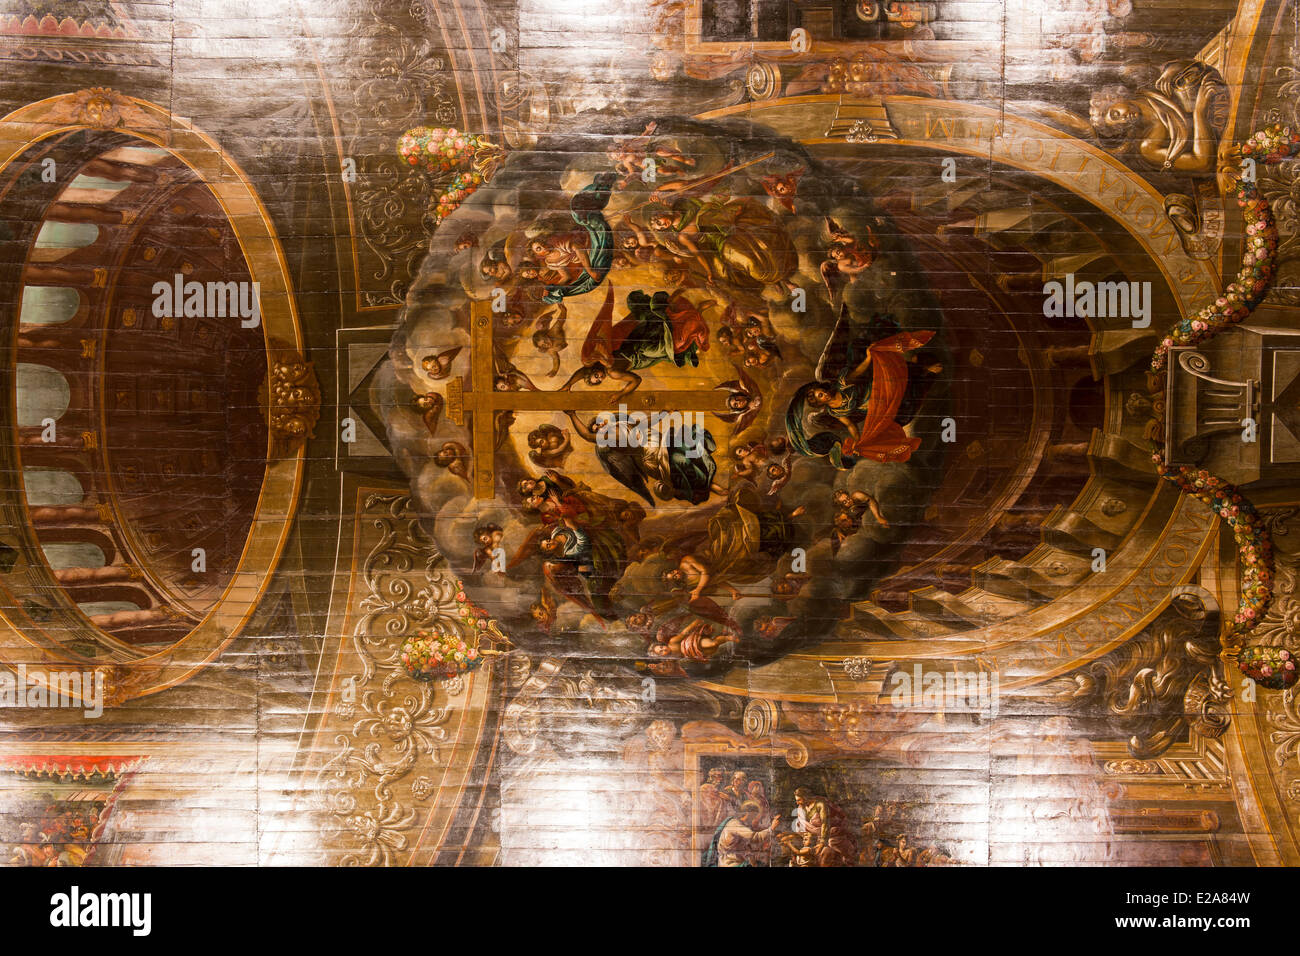 Portugal, Lisbonne, le 16ème siècle, l'église Saint-Roch, le plafond en bois peint. Banque D'Images